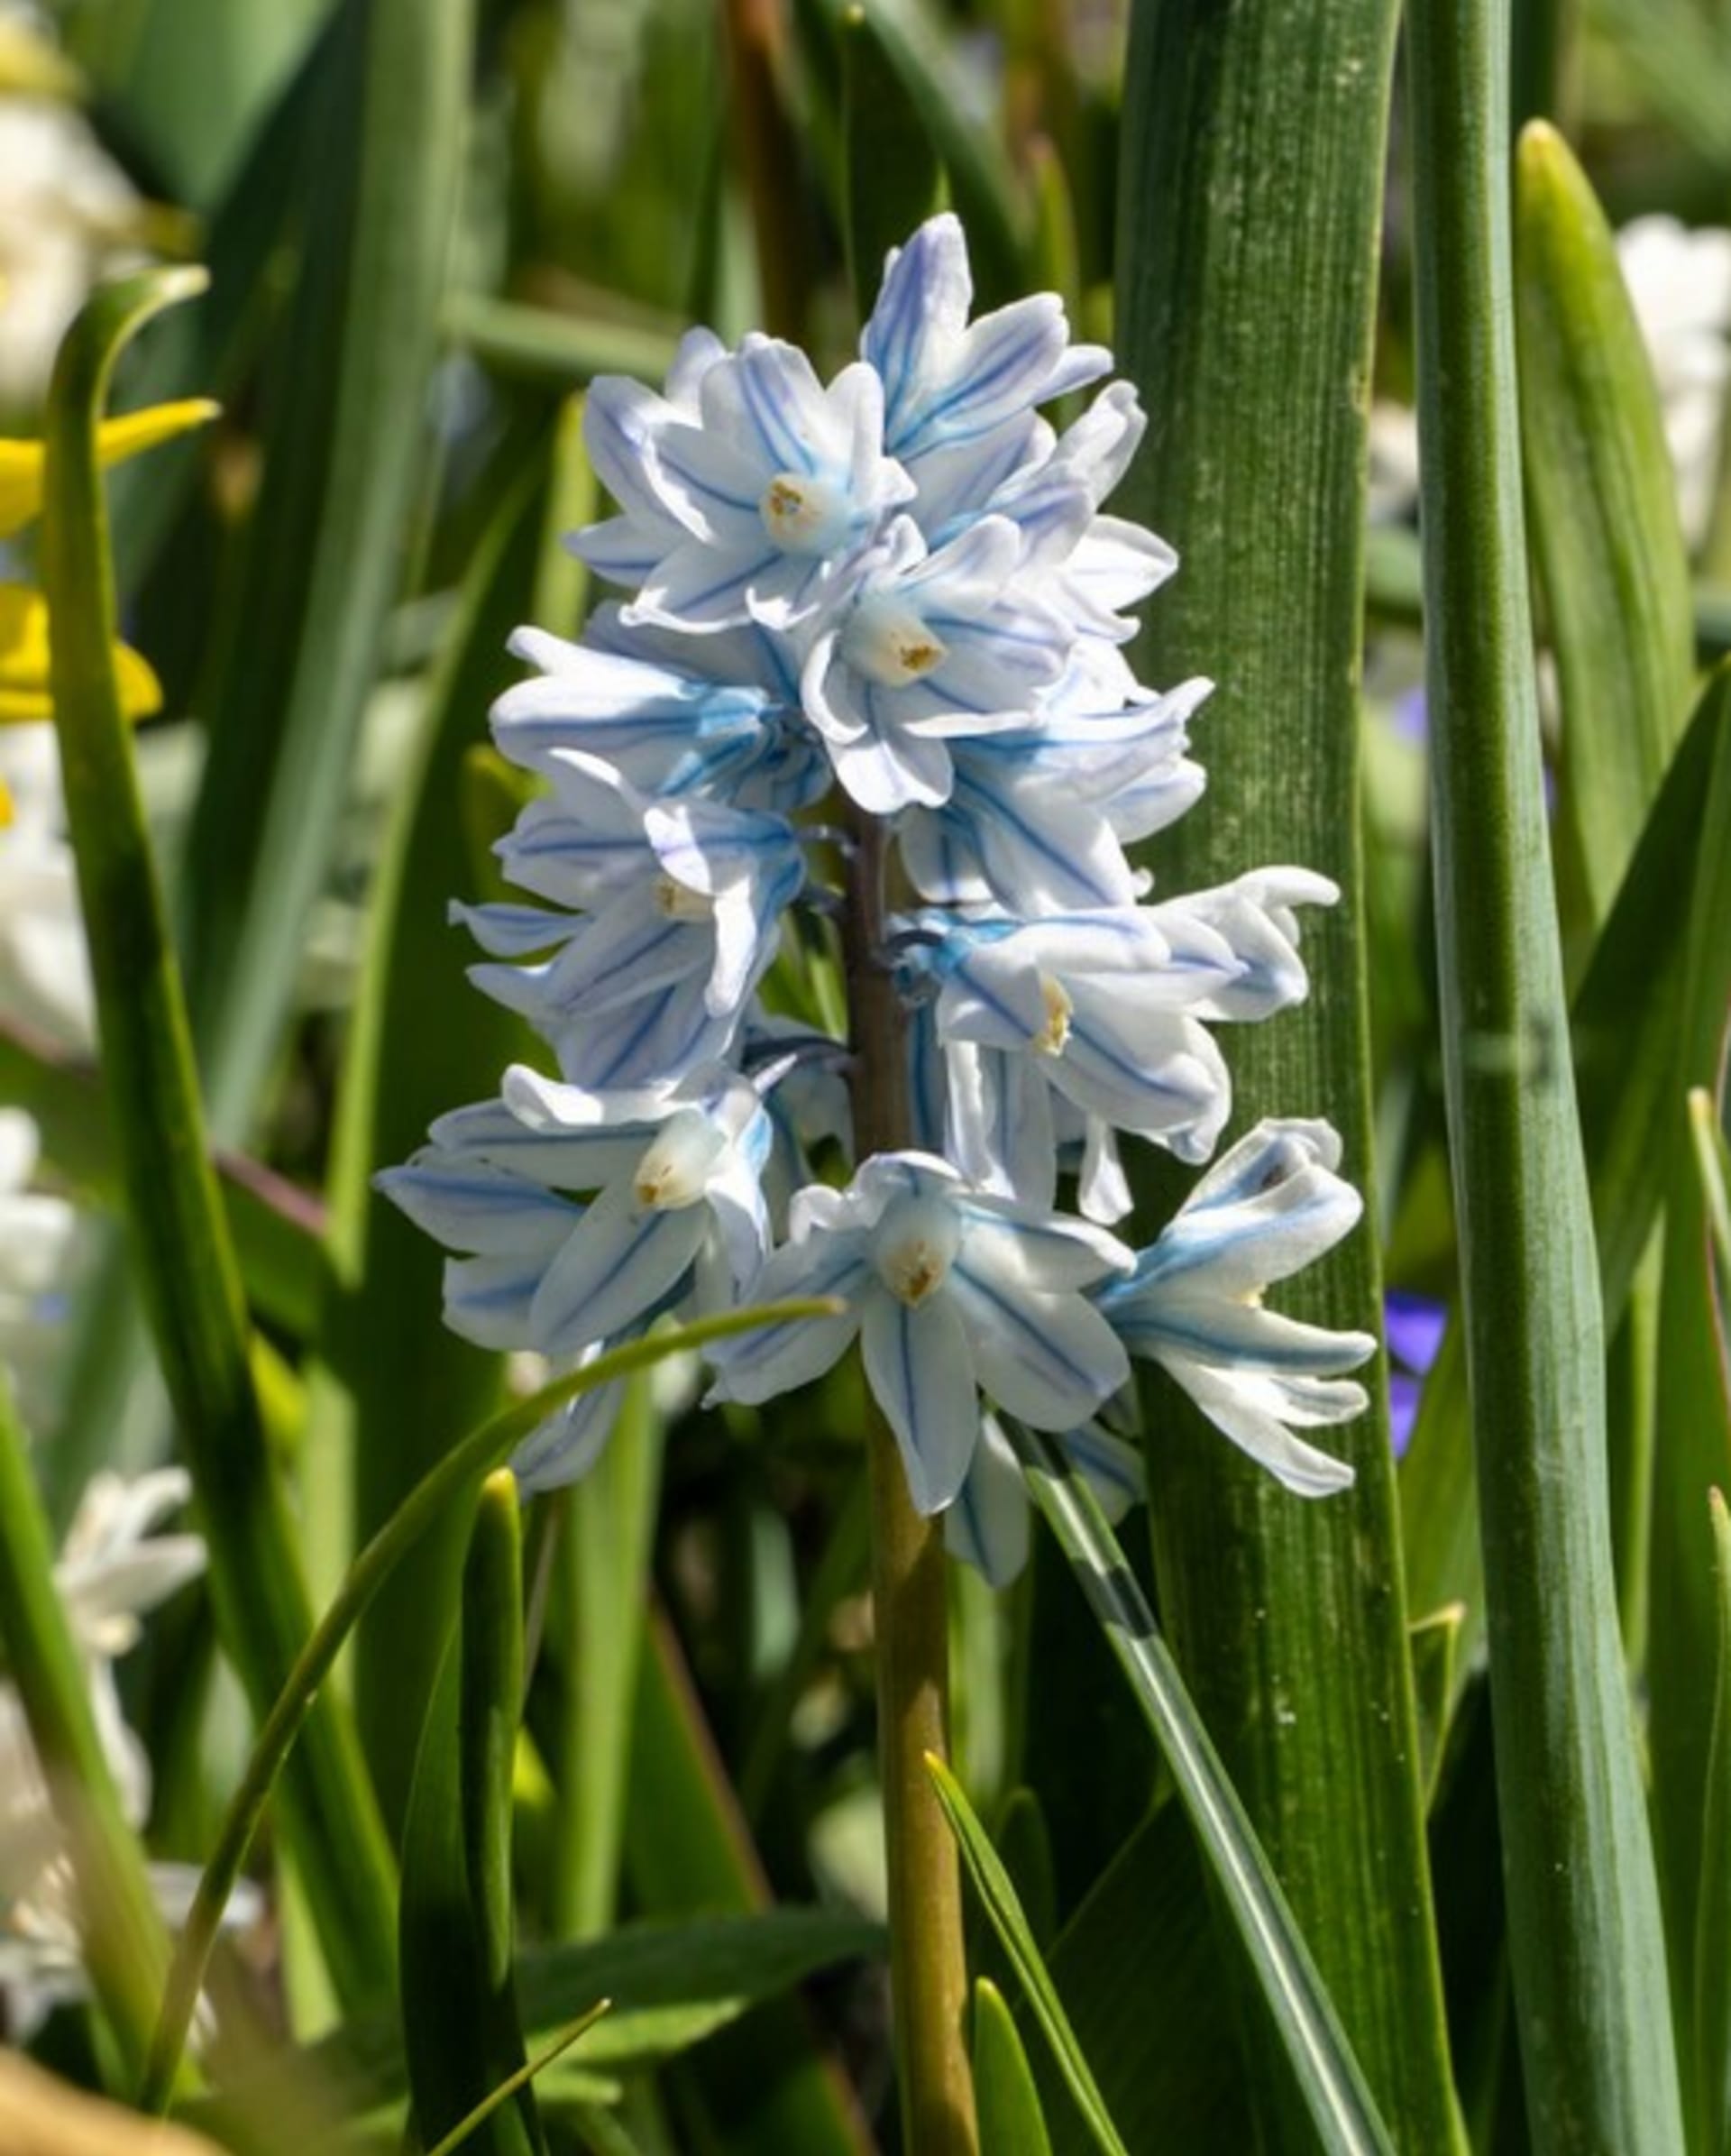 Puškinie ladoňkovitá tvoří bohaté husté hrozny drobných bílých kvítků s výraznými modrými proužky.